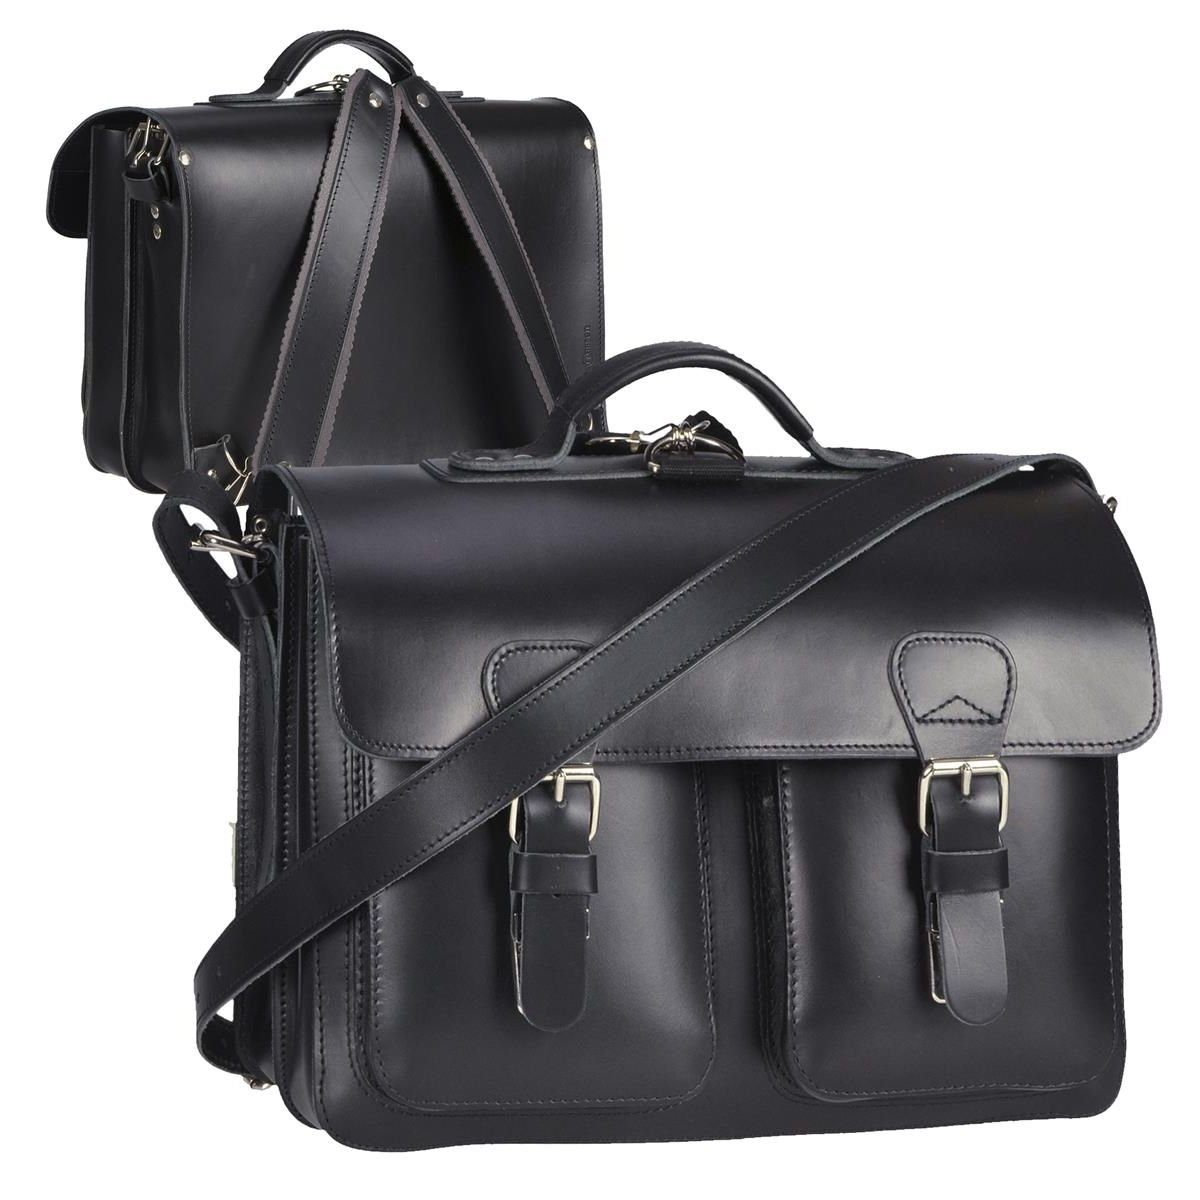 Ruitertassen Aktentasche Classic Satchel, 38 cm Lehrertasche mit 2 Fächern, auch als Rucksack zu tragen, Leder schwarz